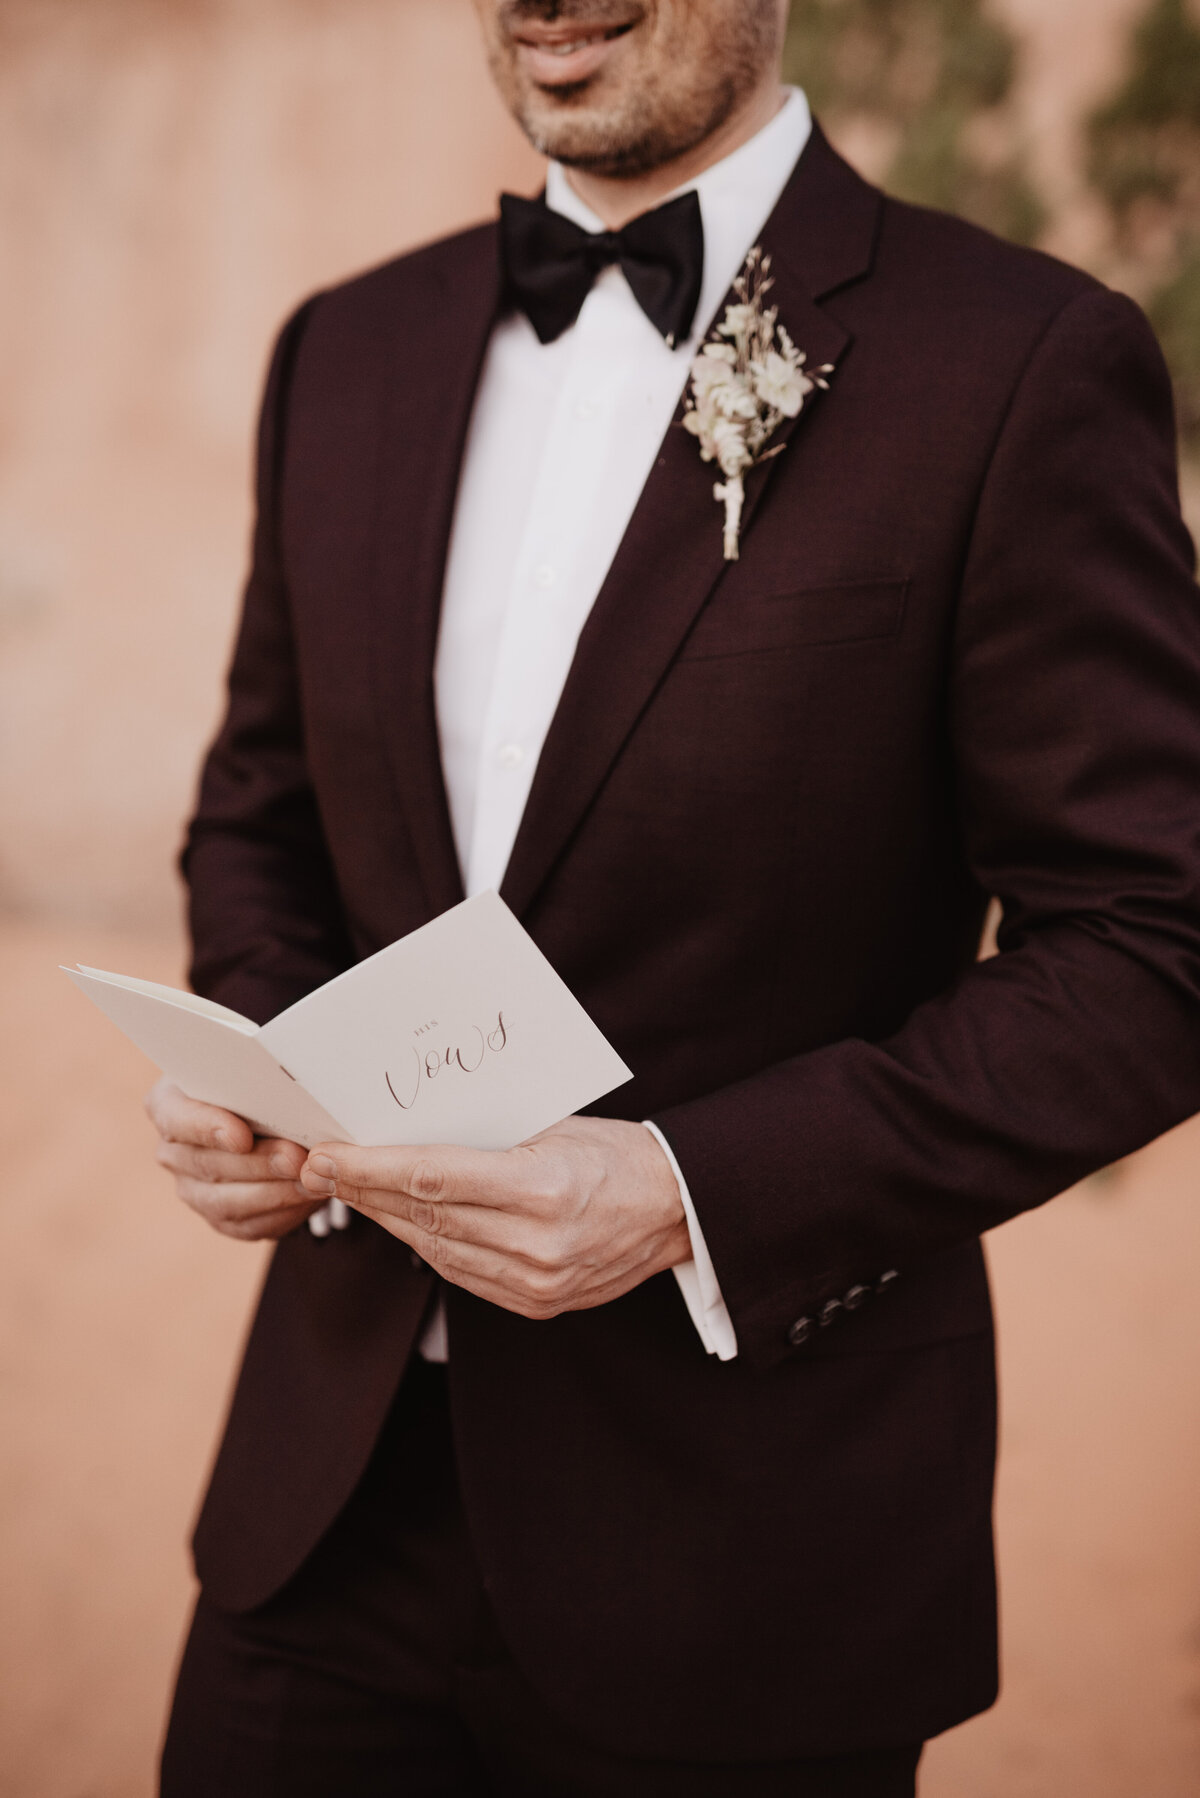 Utah elopement photographer captures groom holding vow book